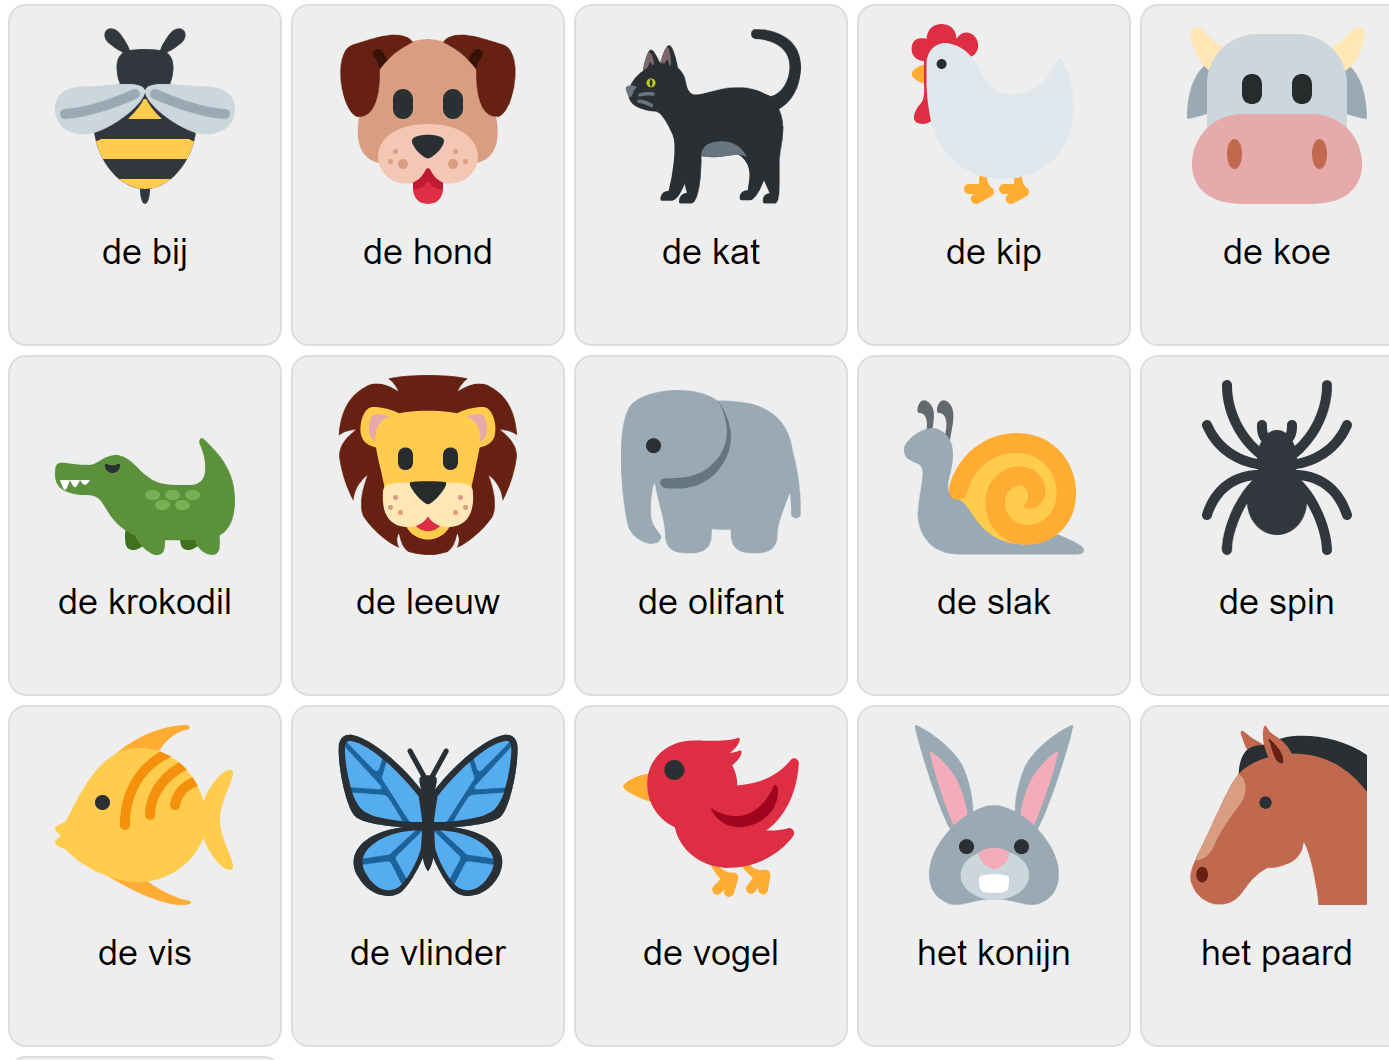 Тварини голландською мовою